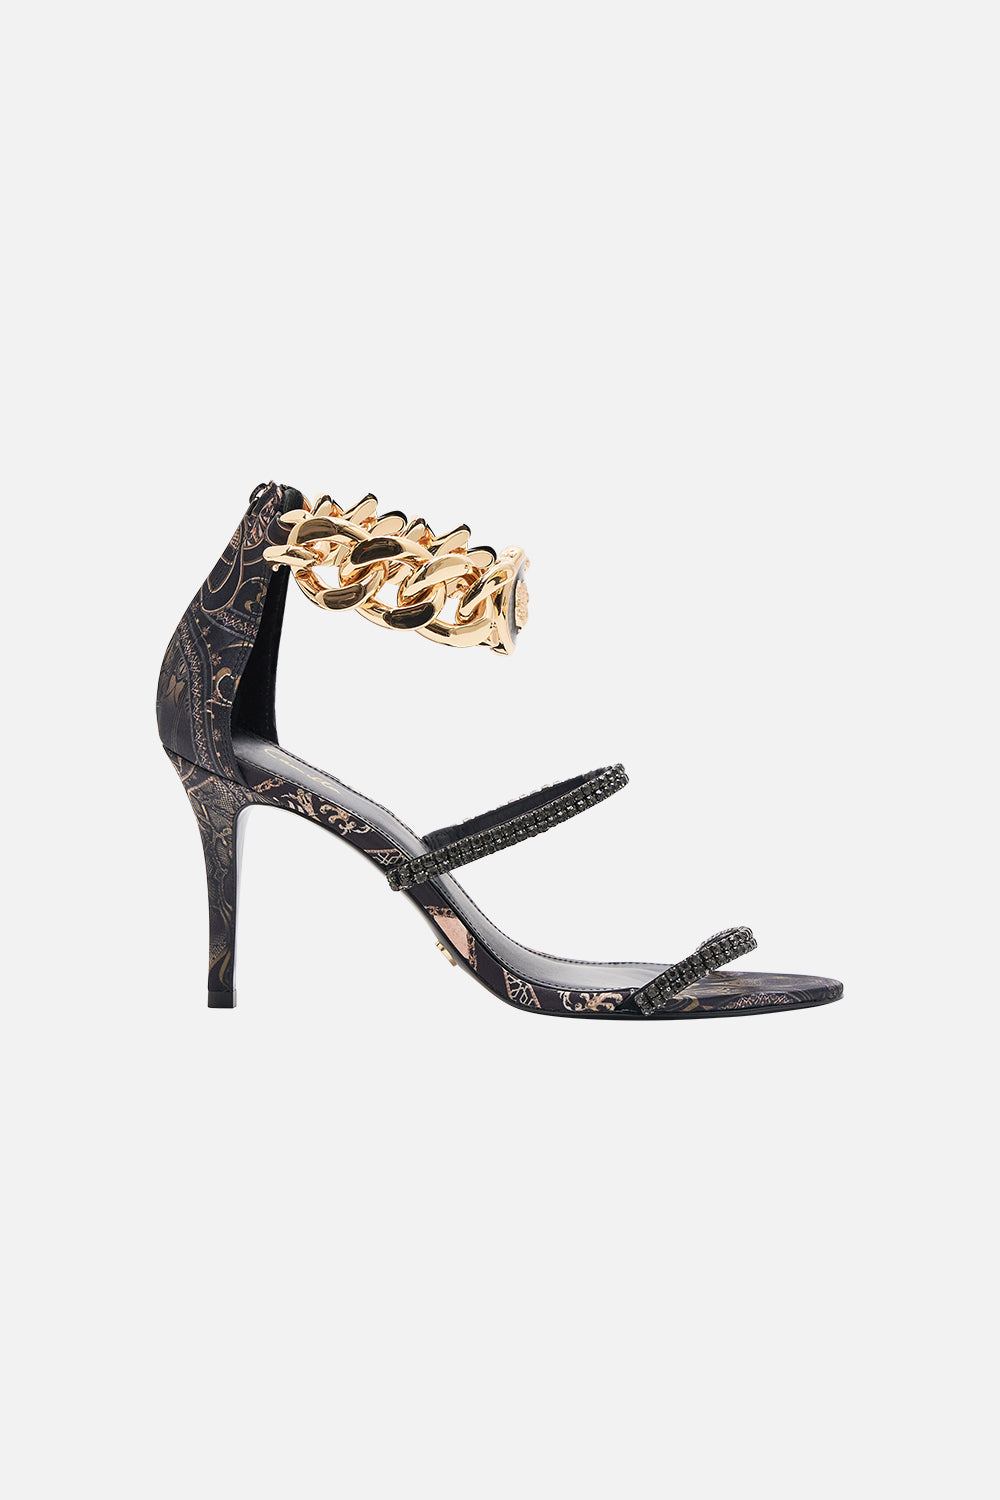 CAMILLA heels in Nouveau Noir print